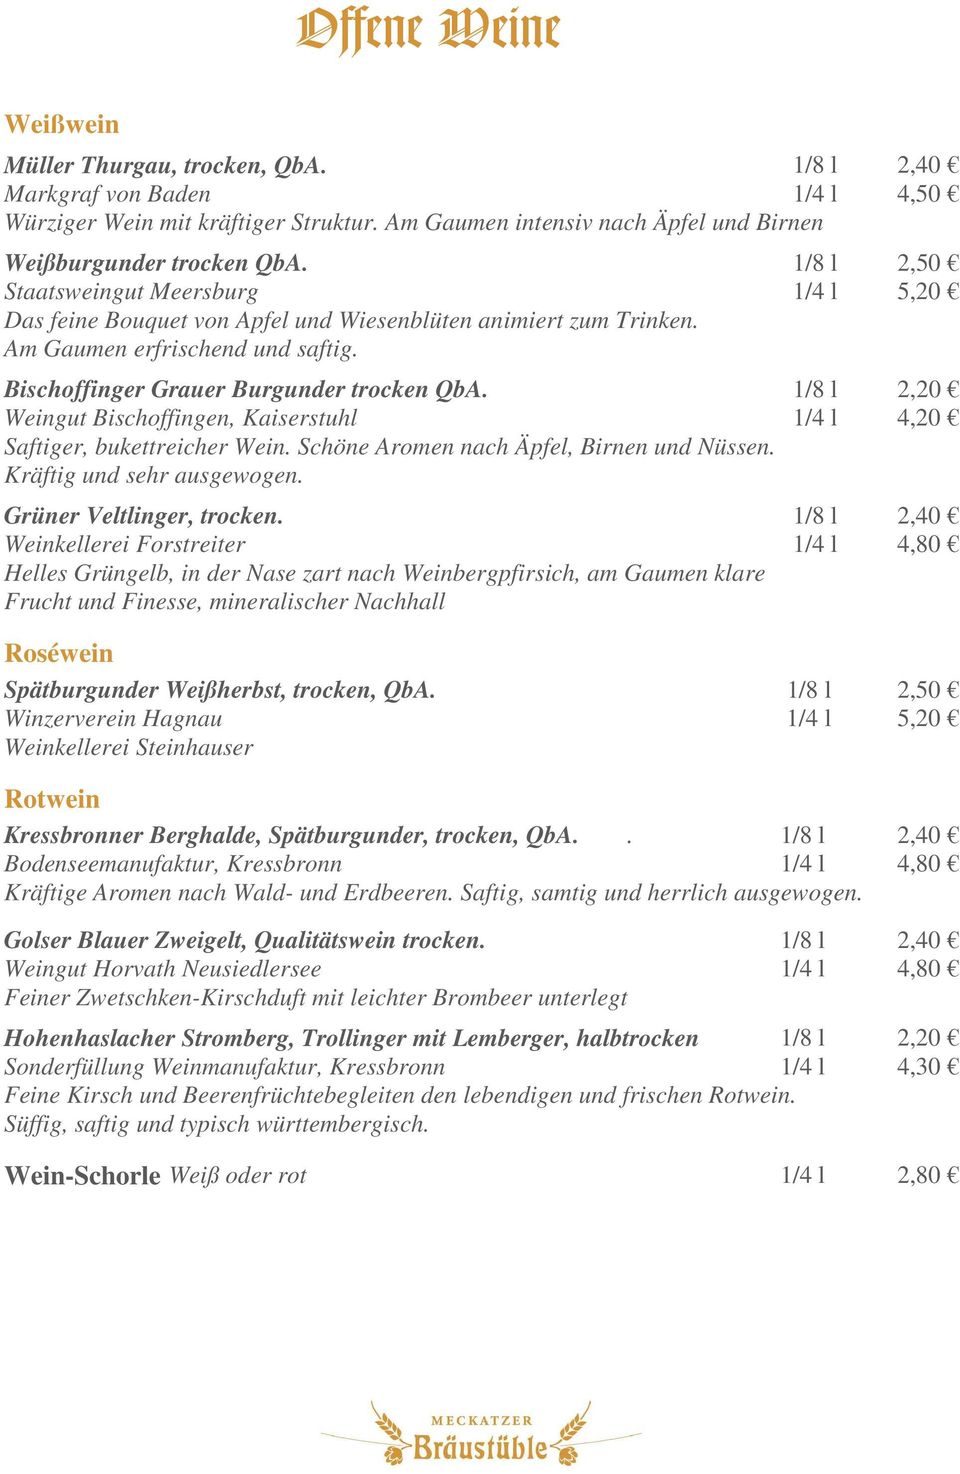 1/8 l 2,20 Weingut Bischoffingen, Kaiserstuhl 1/4 l 4,20 Saftiger, bukettreicher Wein. Schöne Aromen nach Äpfel, Birnen und Nüssen. Kräftig und sehr ausgewogen. Grüner Veltlinger, trocken.